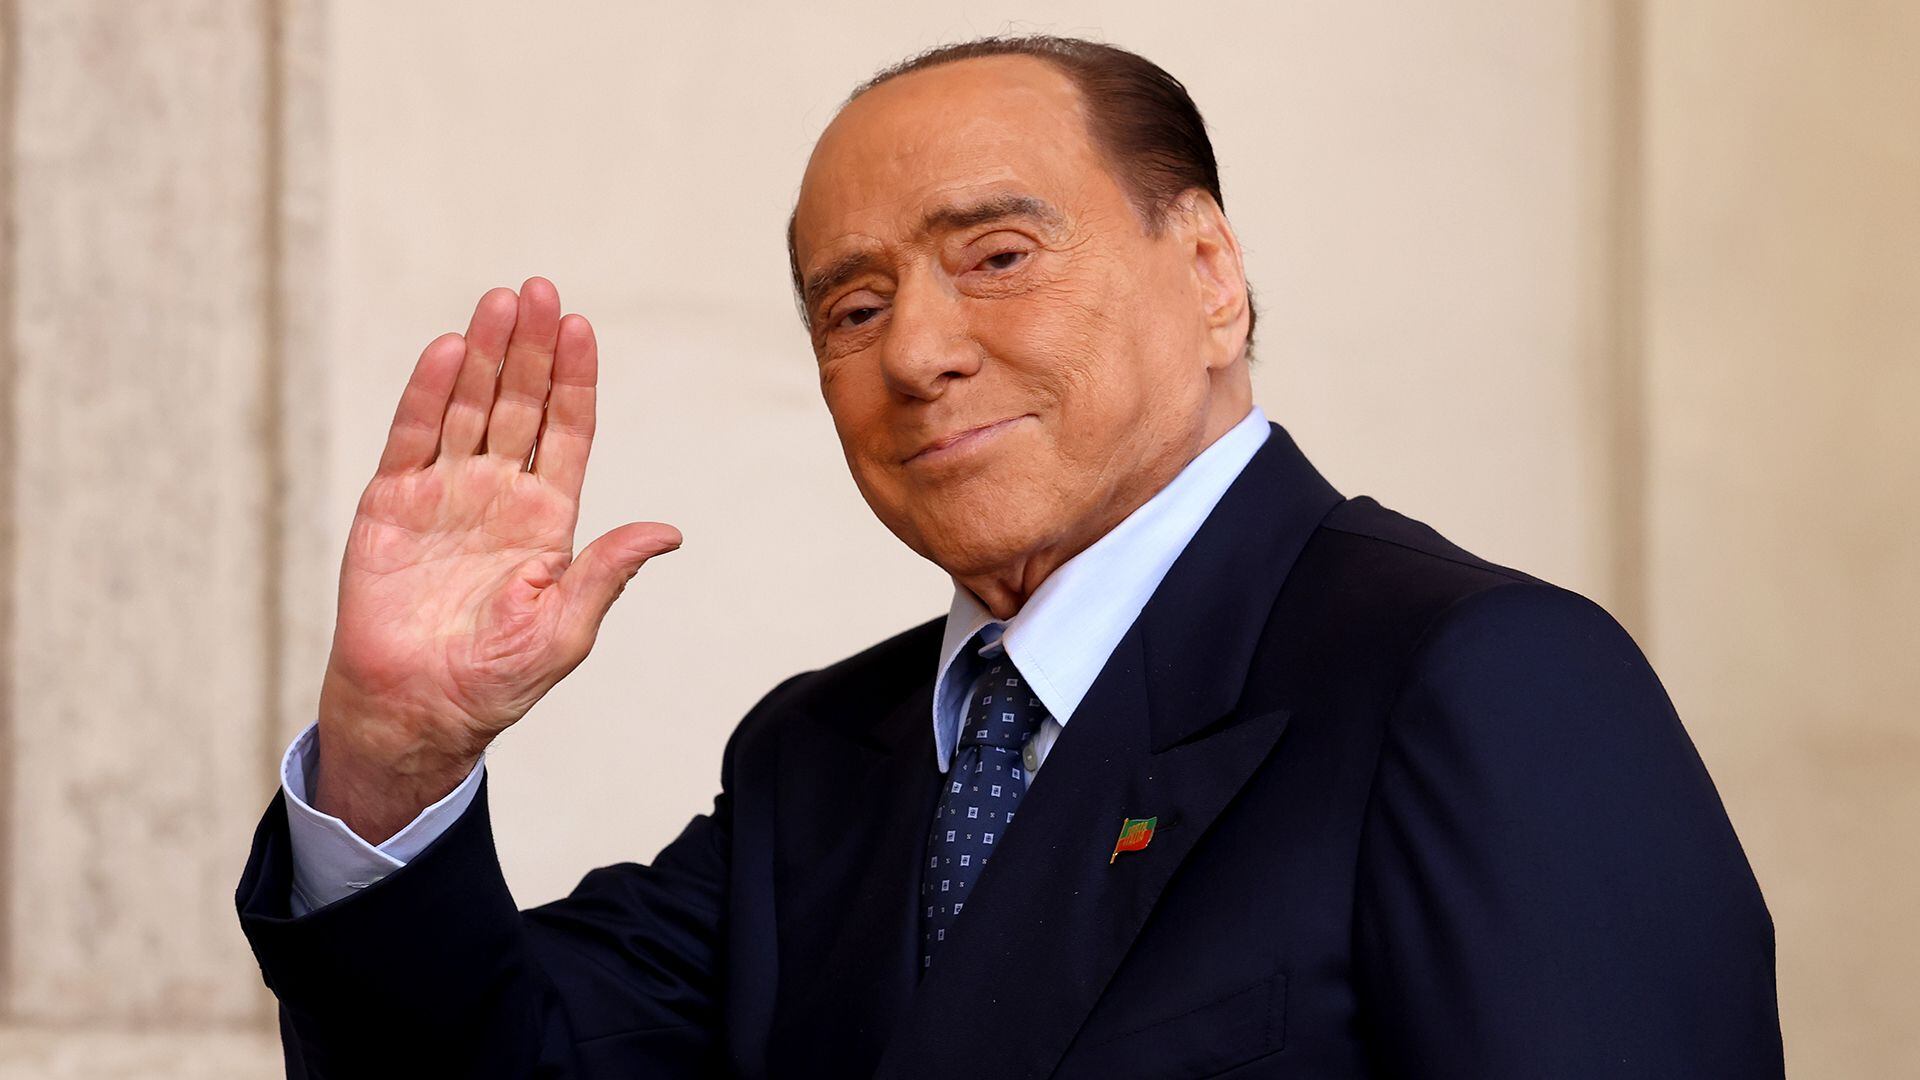 Silvio Berlusconi (Franco Origlia/Getty Images)